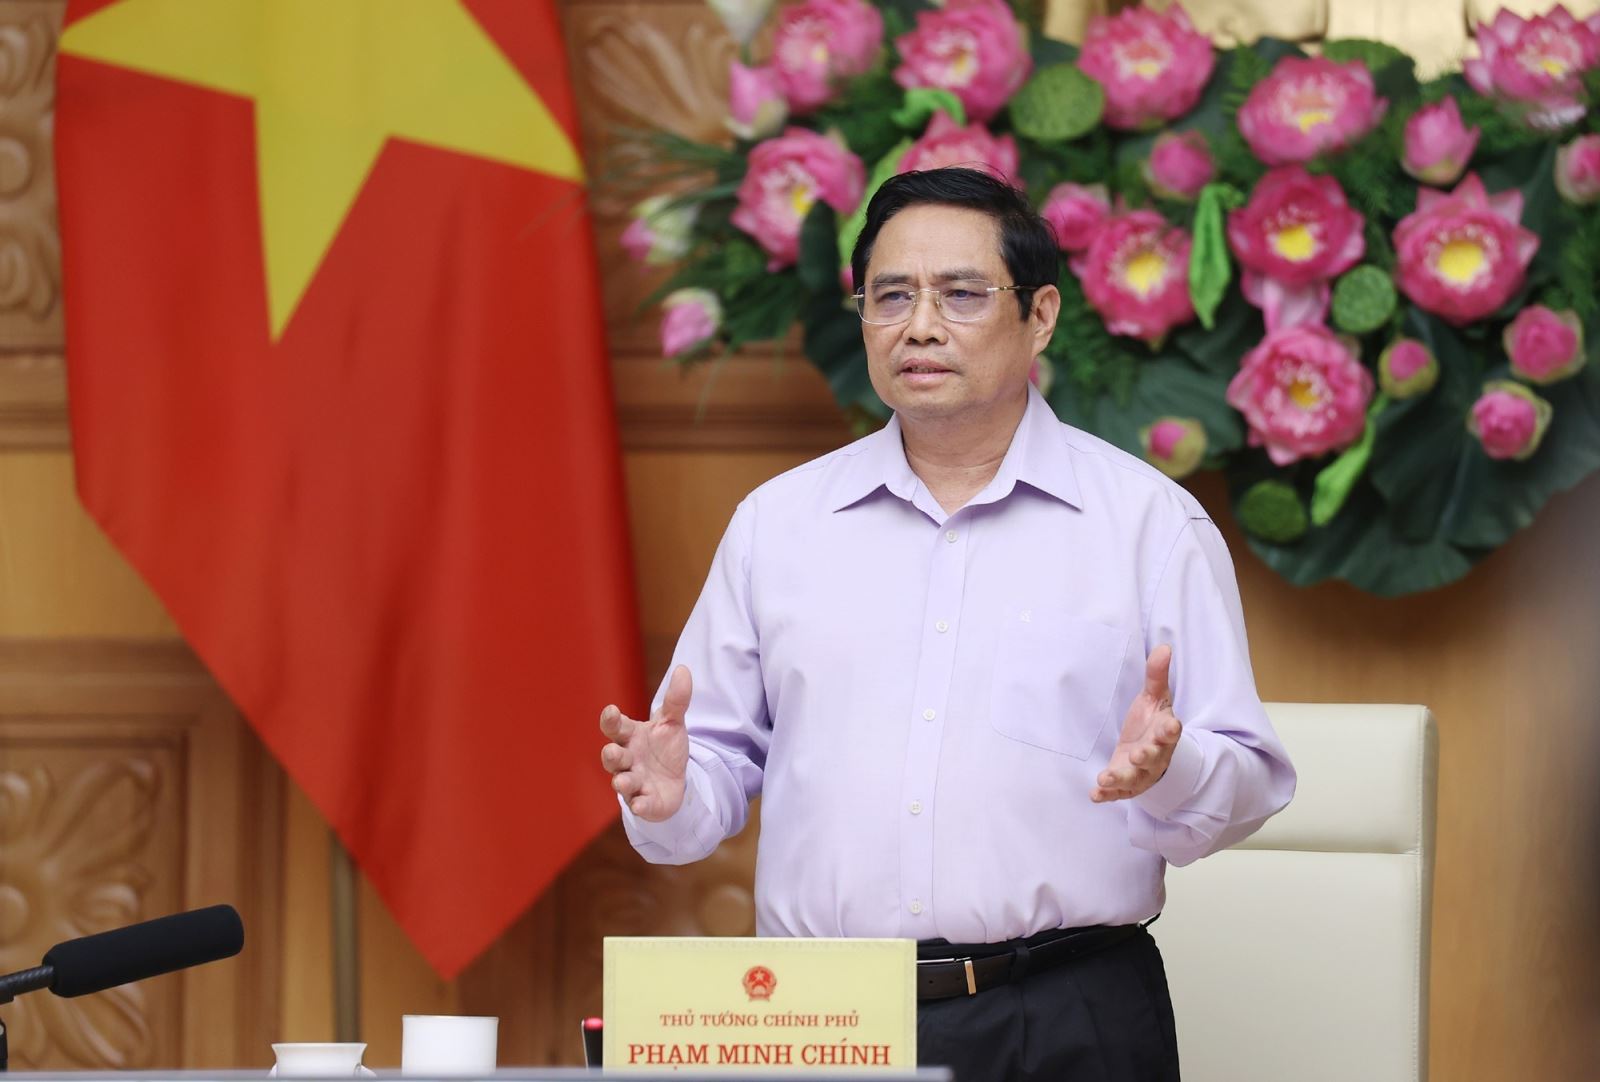 Thủ tướng Chính phủ Phạm Minh Chính là Chủ tịch Ủy ban Quốc gia về chuyển đổi số. Ảnh: TTXVN.